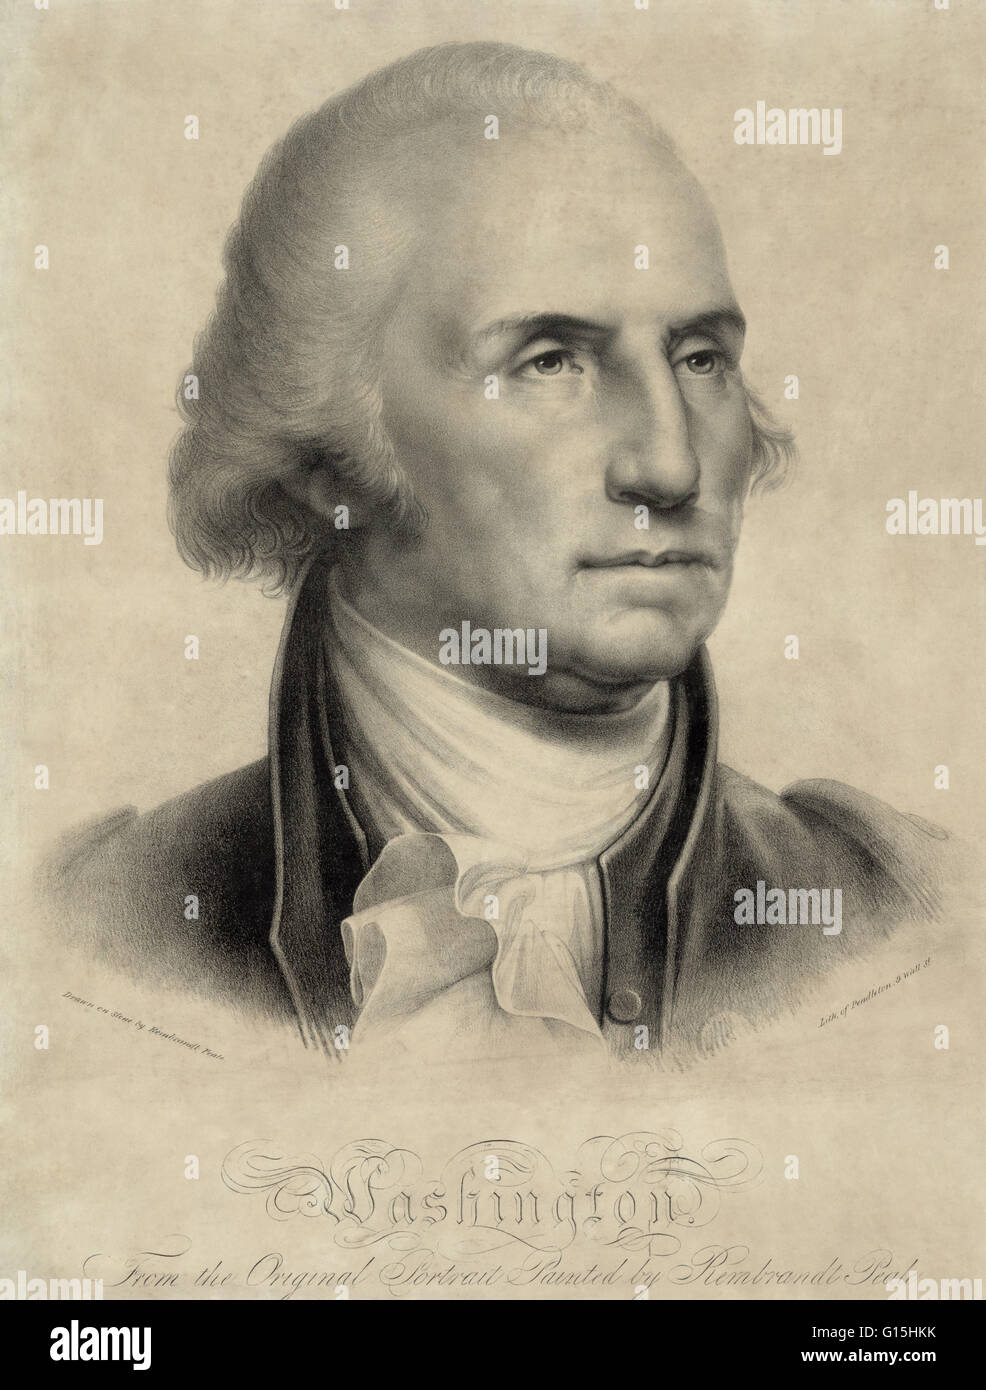 George Washington (22 février 1732 - 14 décembre 1799) a été le premier président des États-Unis d'Amérique, de 1789 à 1797, et chef militaire et politique dominante des États-Unis de 1775 à 1799. Il a dirigé la victoire américaine ov Banque D'Images